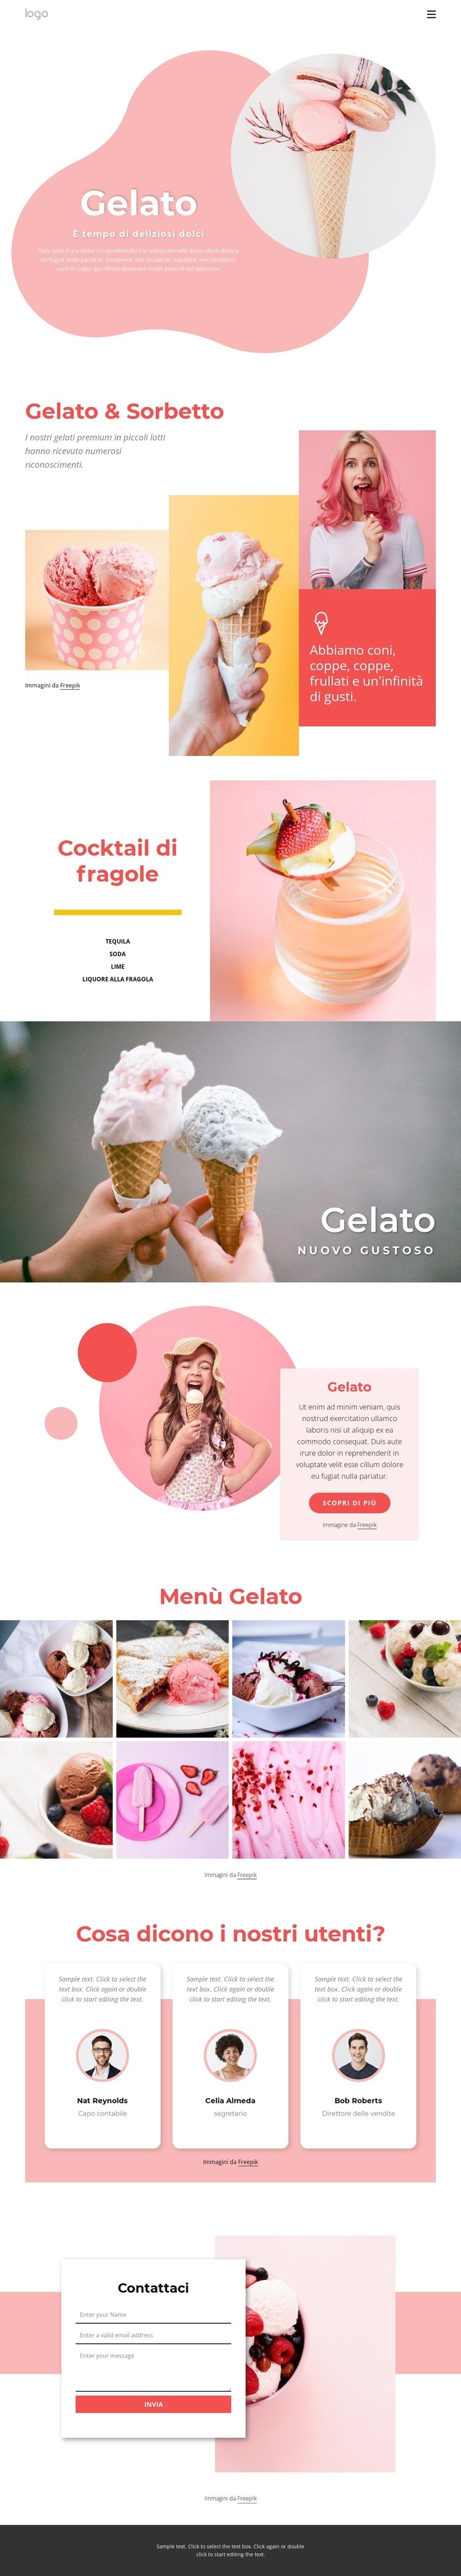 Gelato e Ffrozen yogurt Modelli di Website Builder